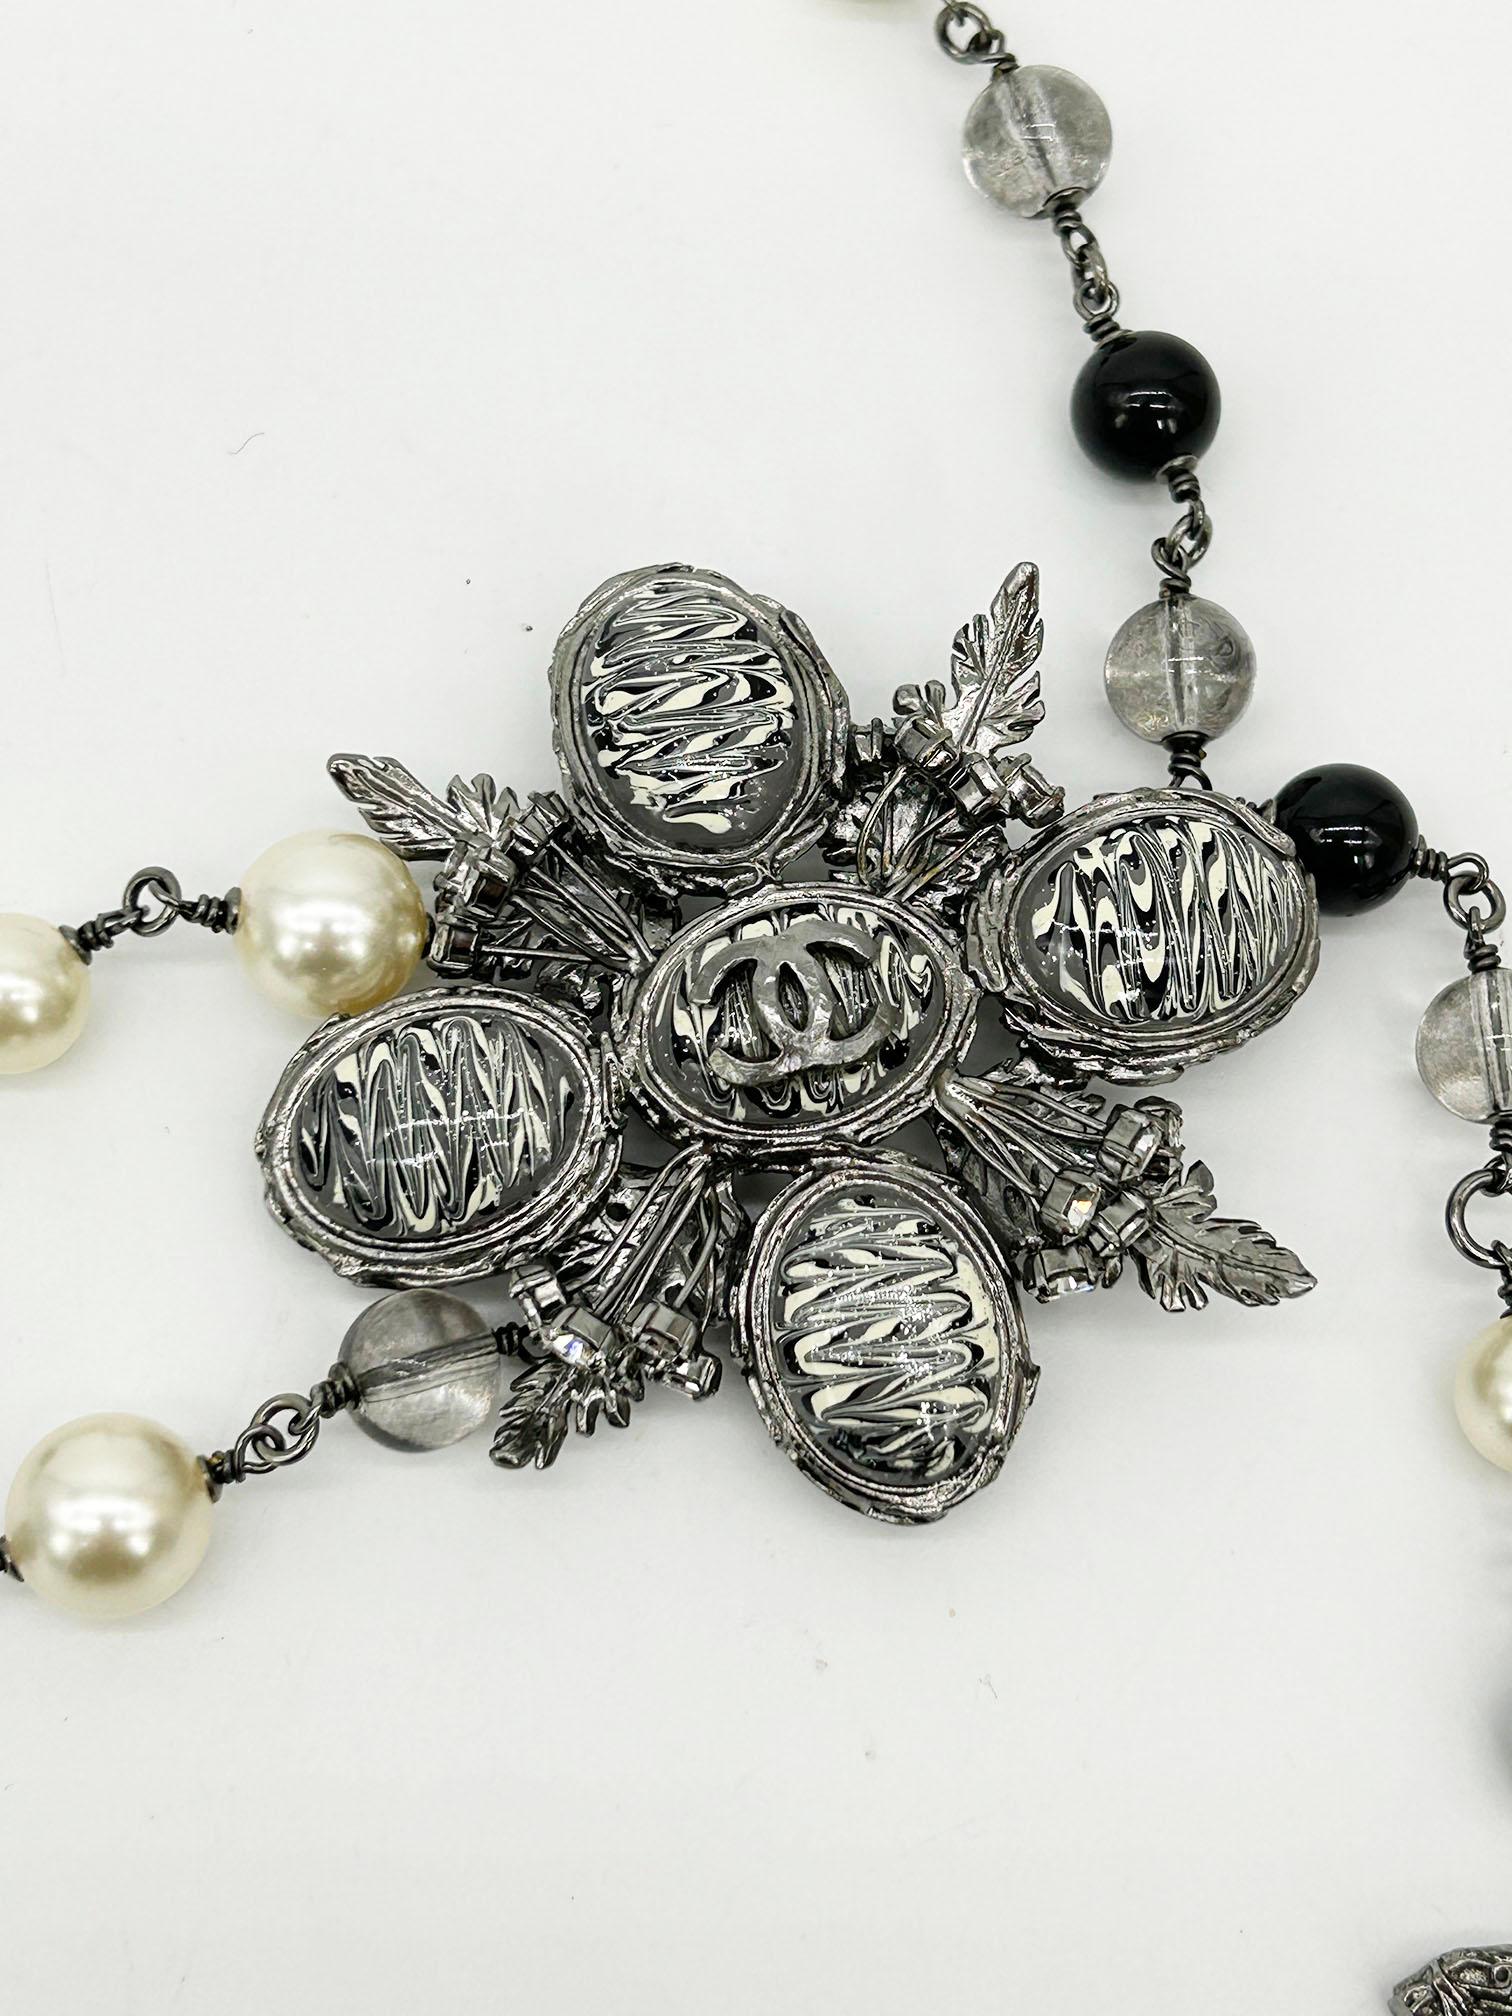 Chanel Perlen Marmor Blume Gürtel Halskette in ausgezeichnetem Zustand. Schwarze, graue Perlen und Metallperlen an einer Kette aus Rotguss. Graues, schwarzes und weißes Glitzermarmor-Emblem mit Rotguss-Hardware, Strasssteinen und CC-Logo in der